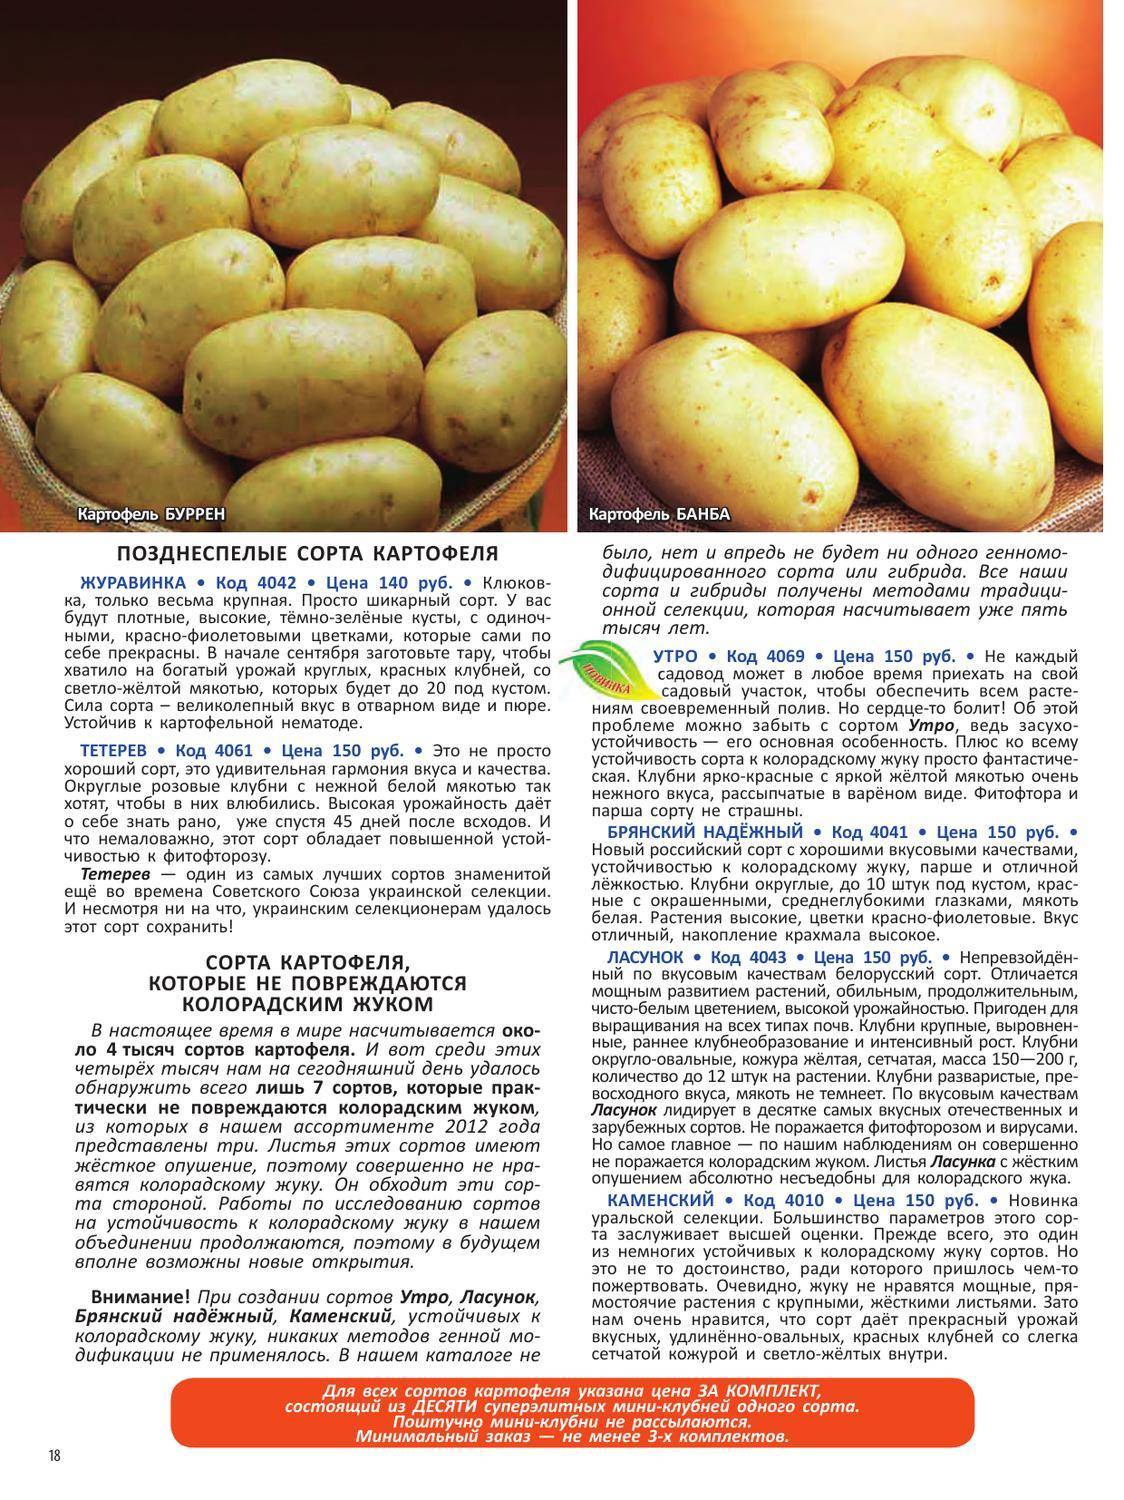 Сорт картофеля вектор: описание и характеристика белорусского вида, а также фото данного корнеплода и пошаговая инструкция по выращиванию